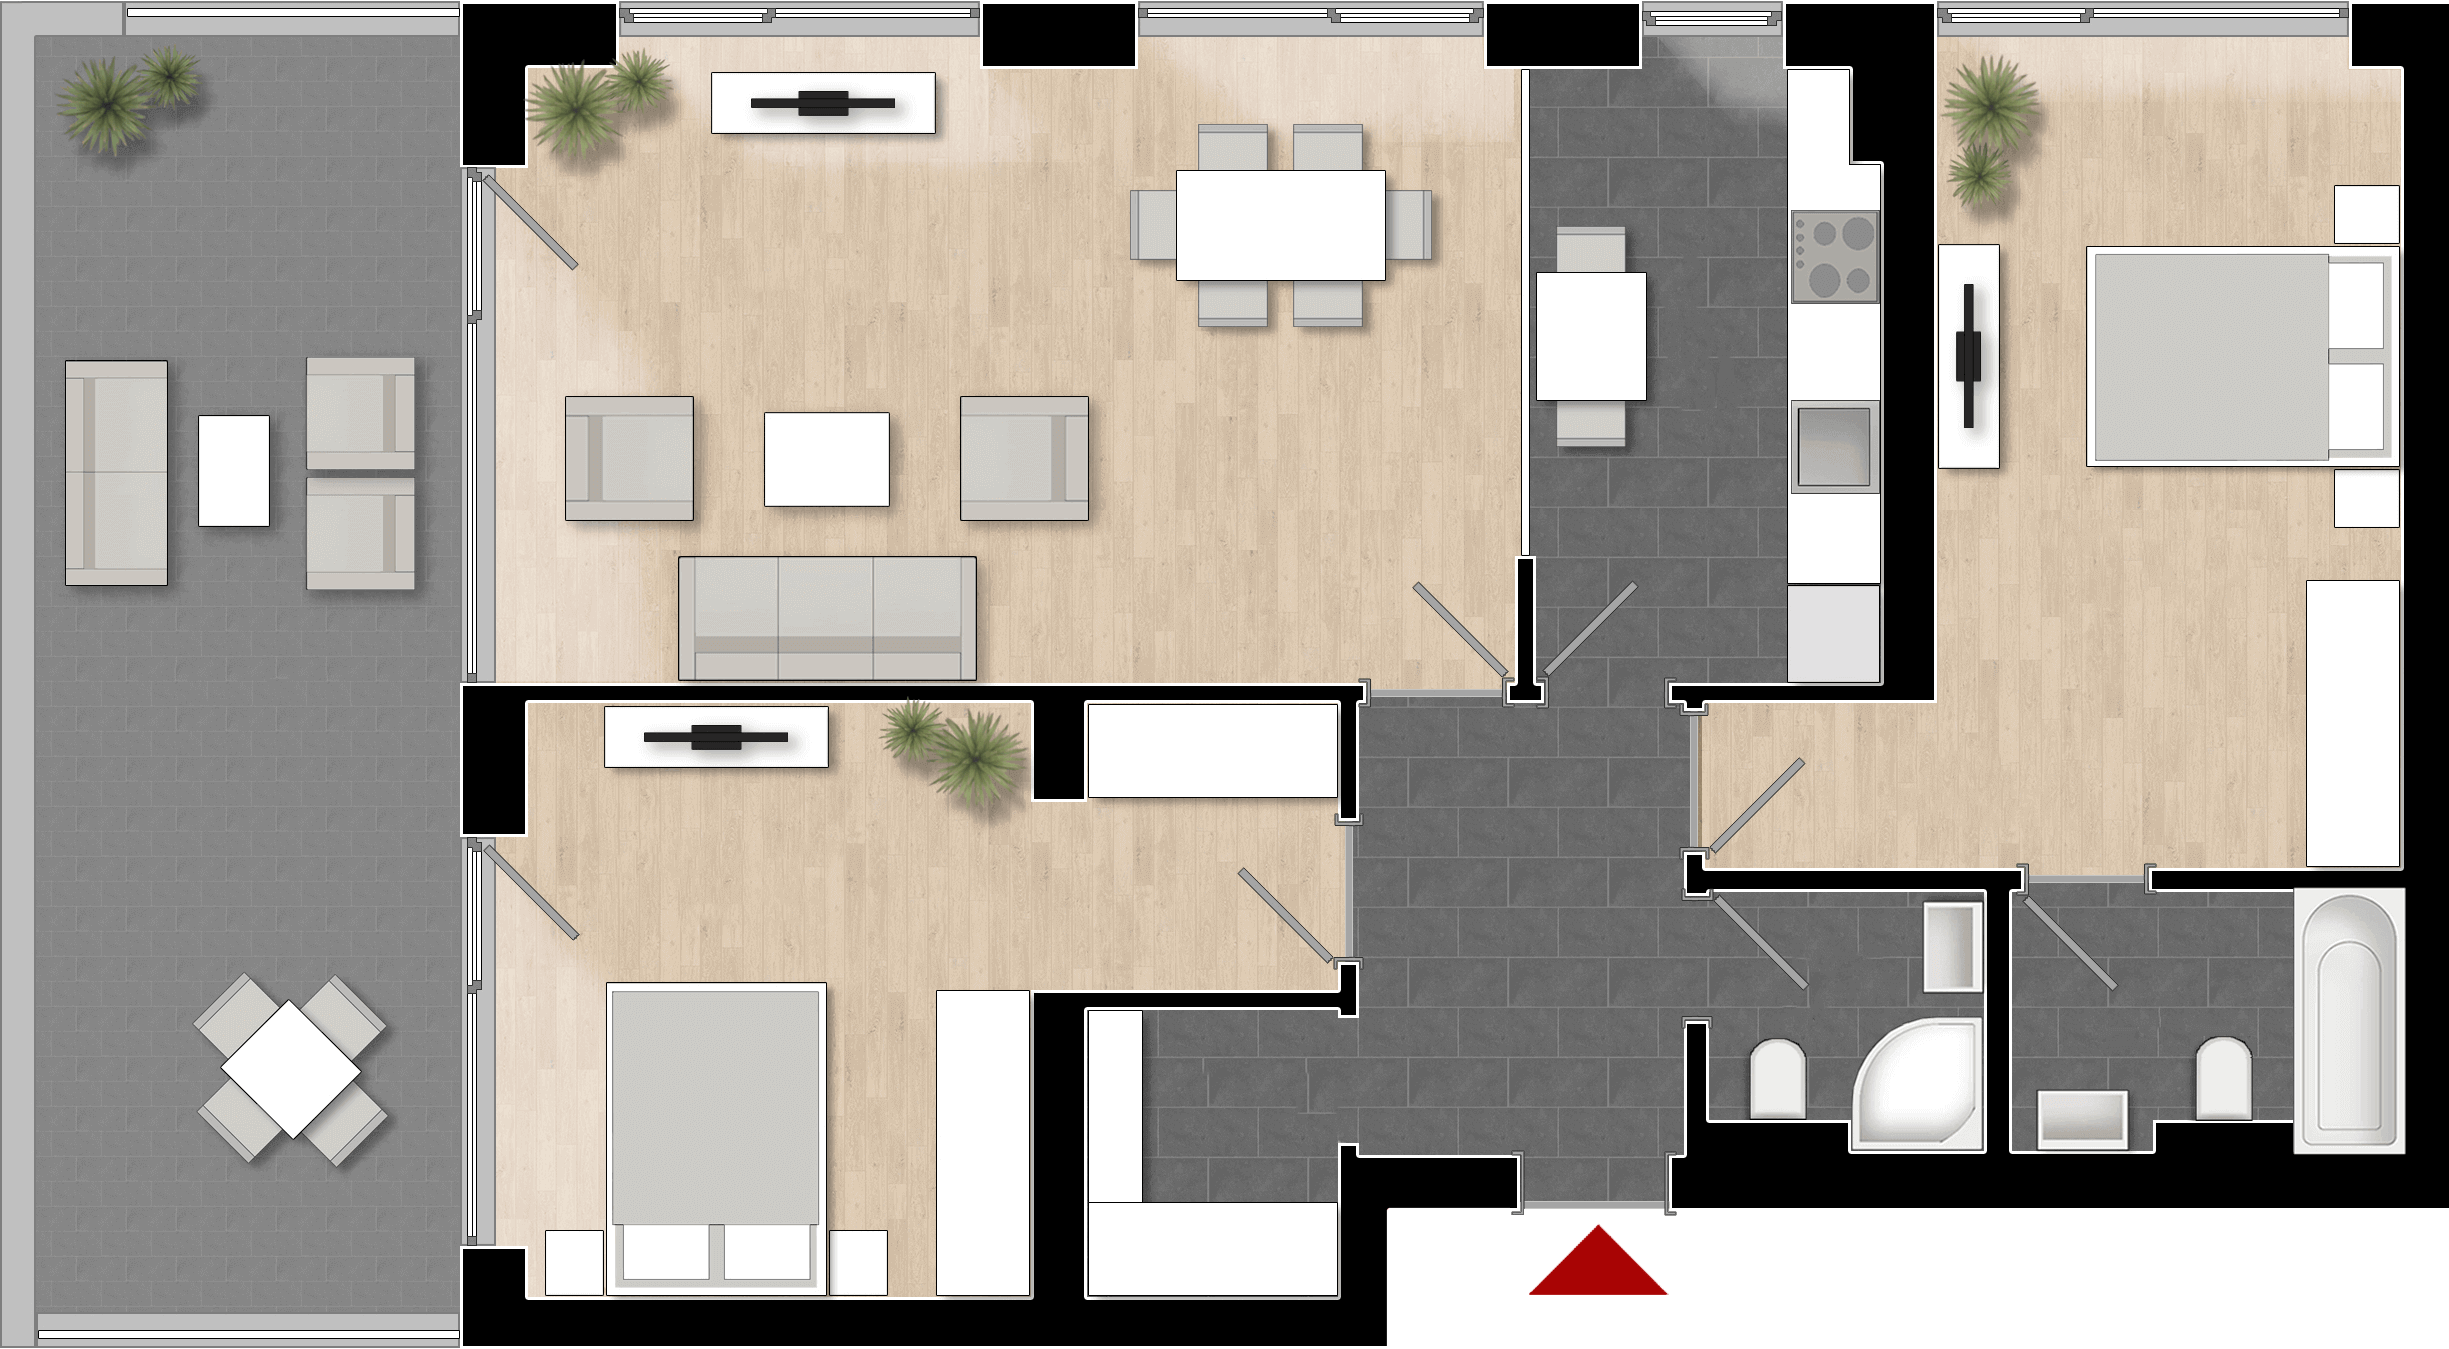  Apartament Tip 3B cu 3 camere 